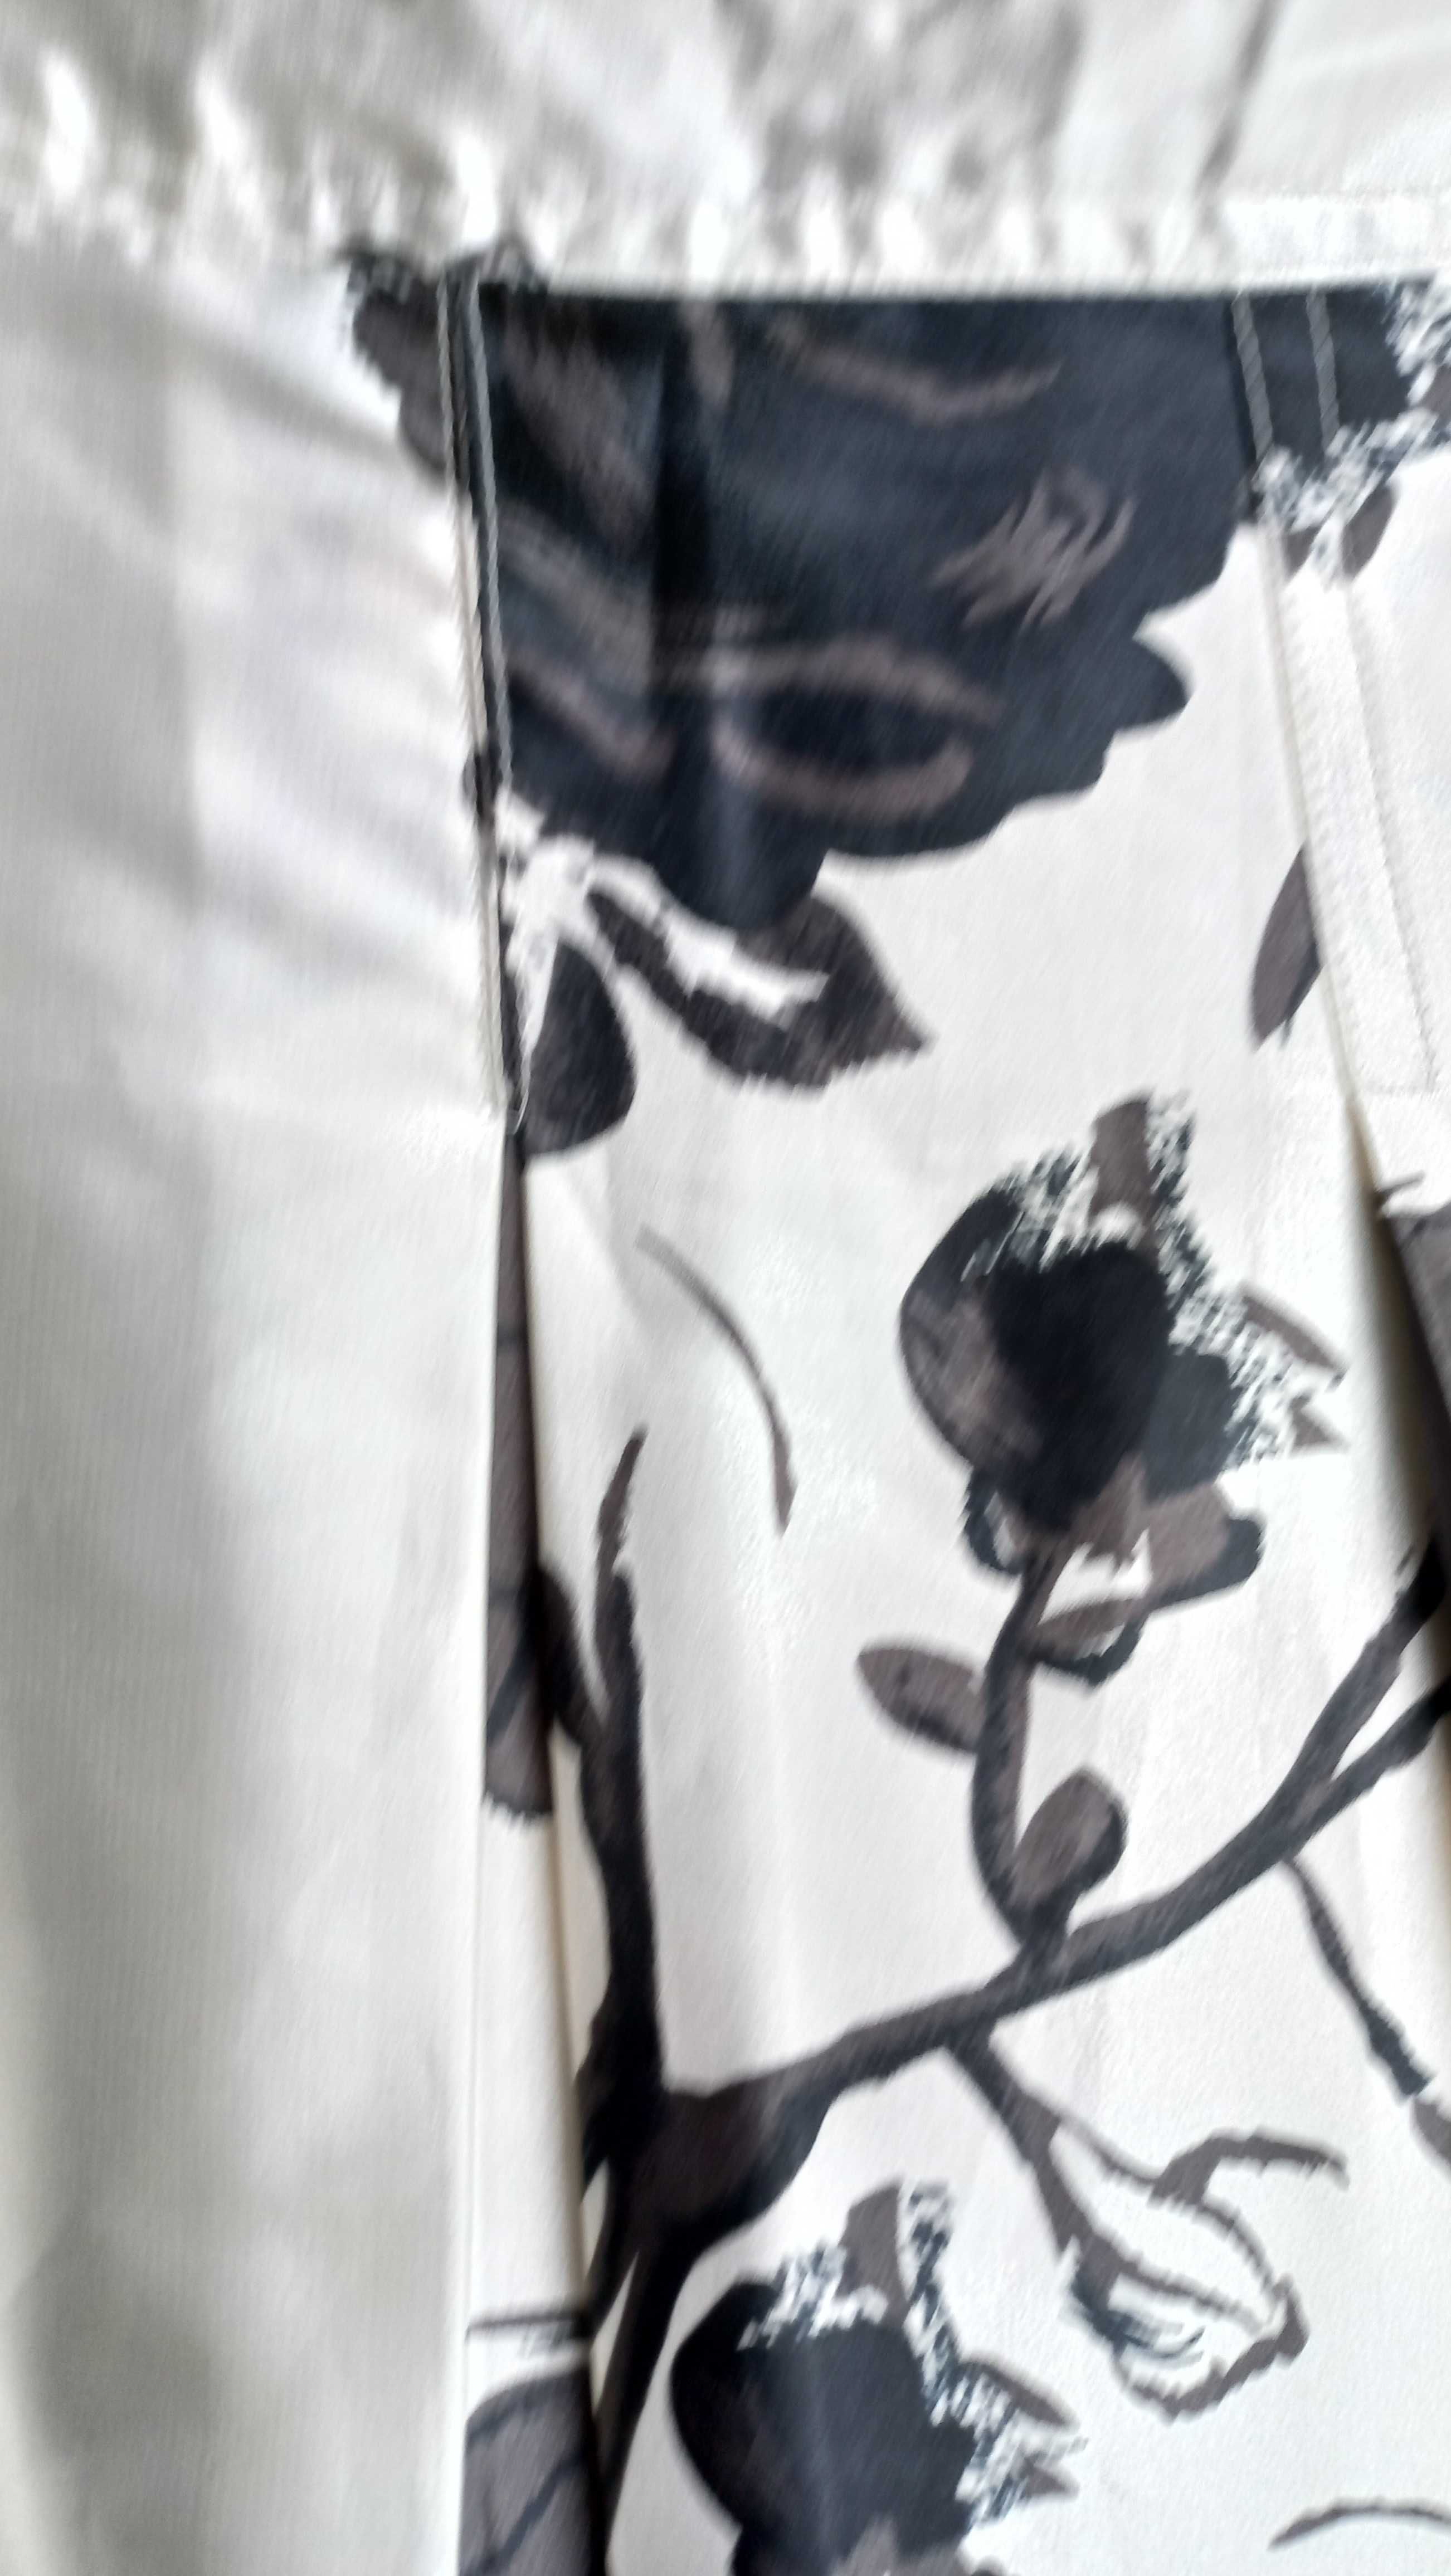 Spódnica biała w czarne kwiaty XL wyjątkowa